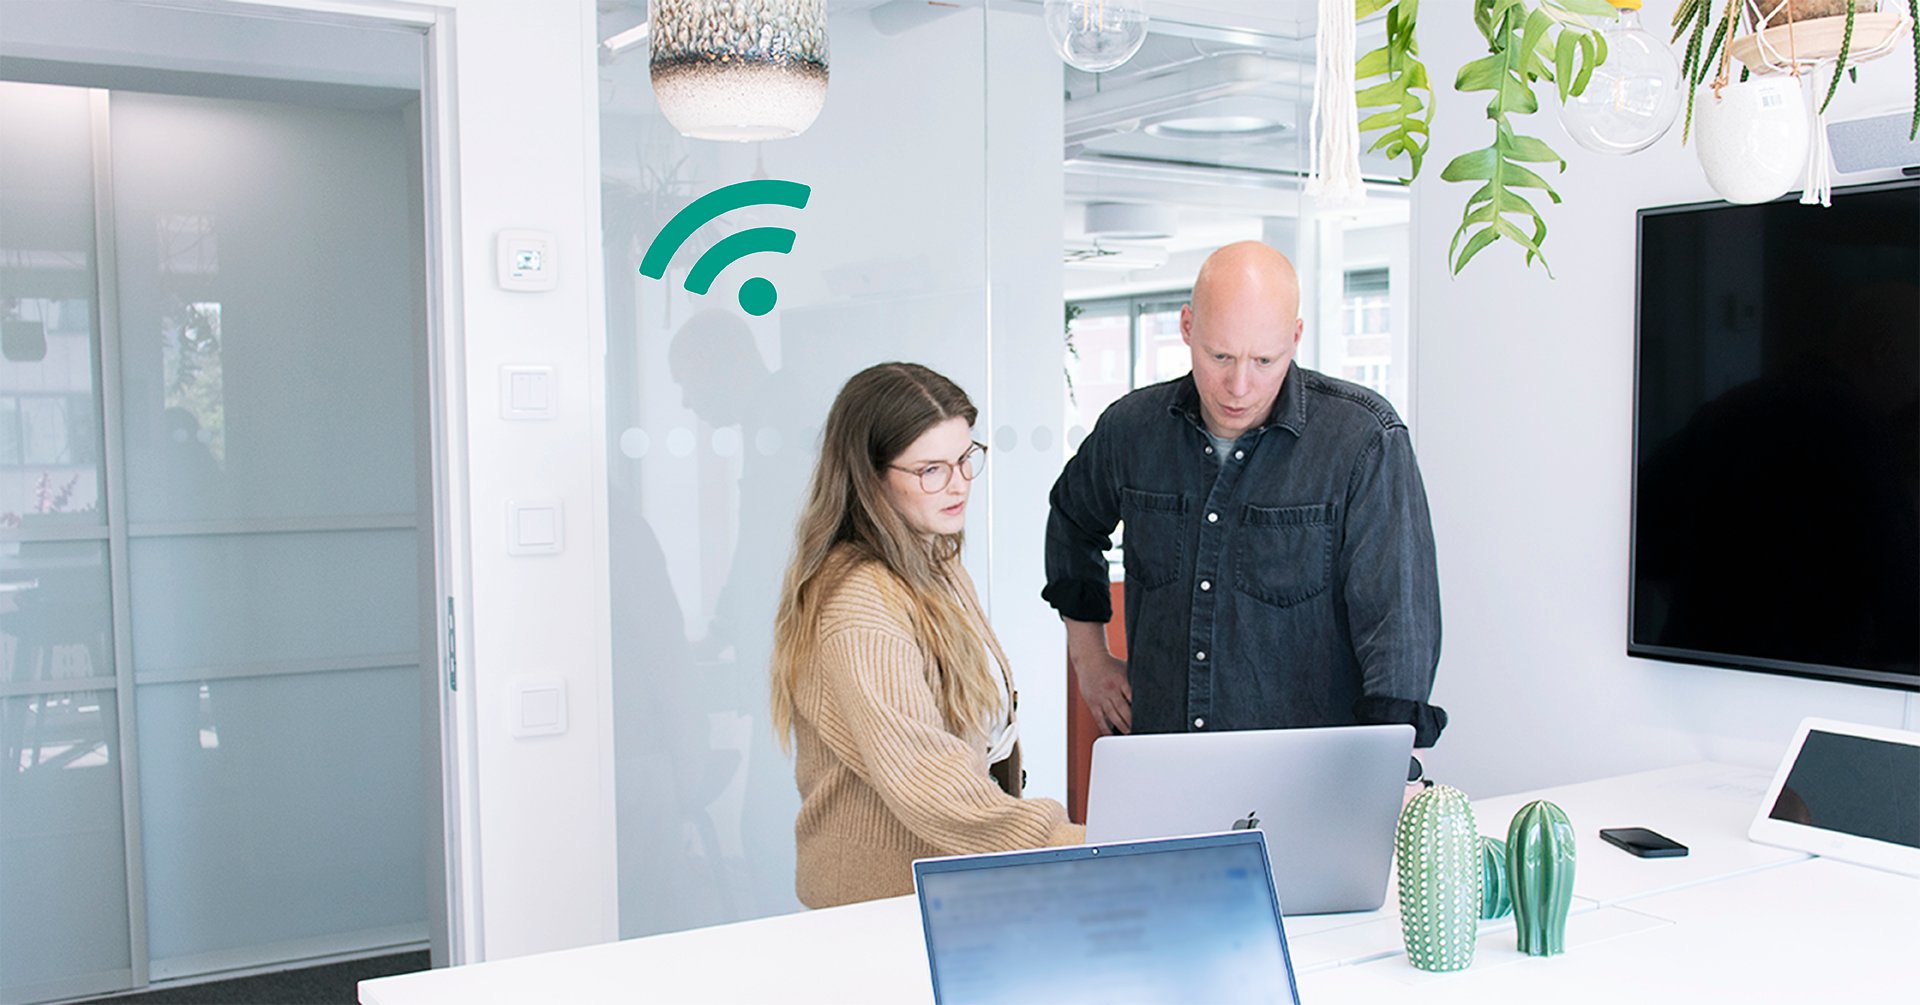 På bilden syns ett kontorsrum med en kvinna i brun tröja och en man i svart skjorta. De står lutade över en laptop och ser bekymrade ut.